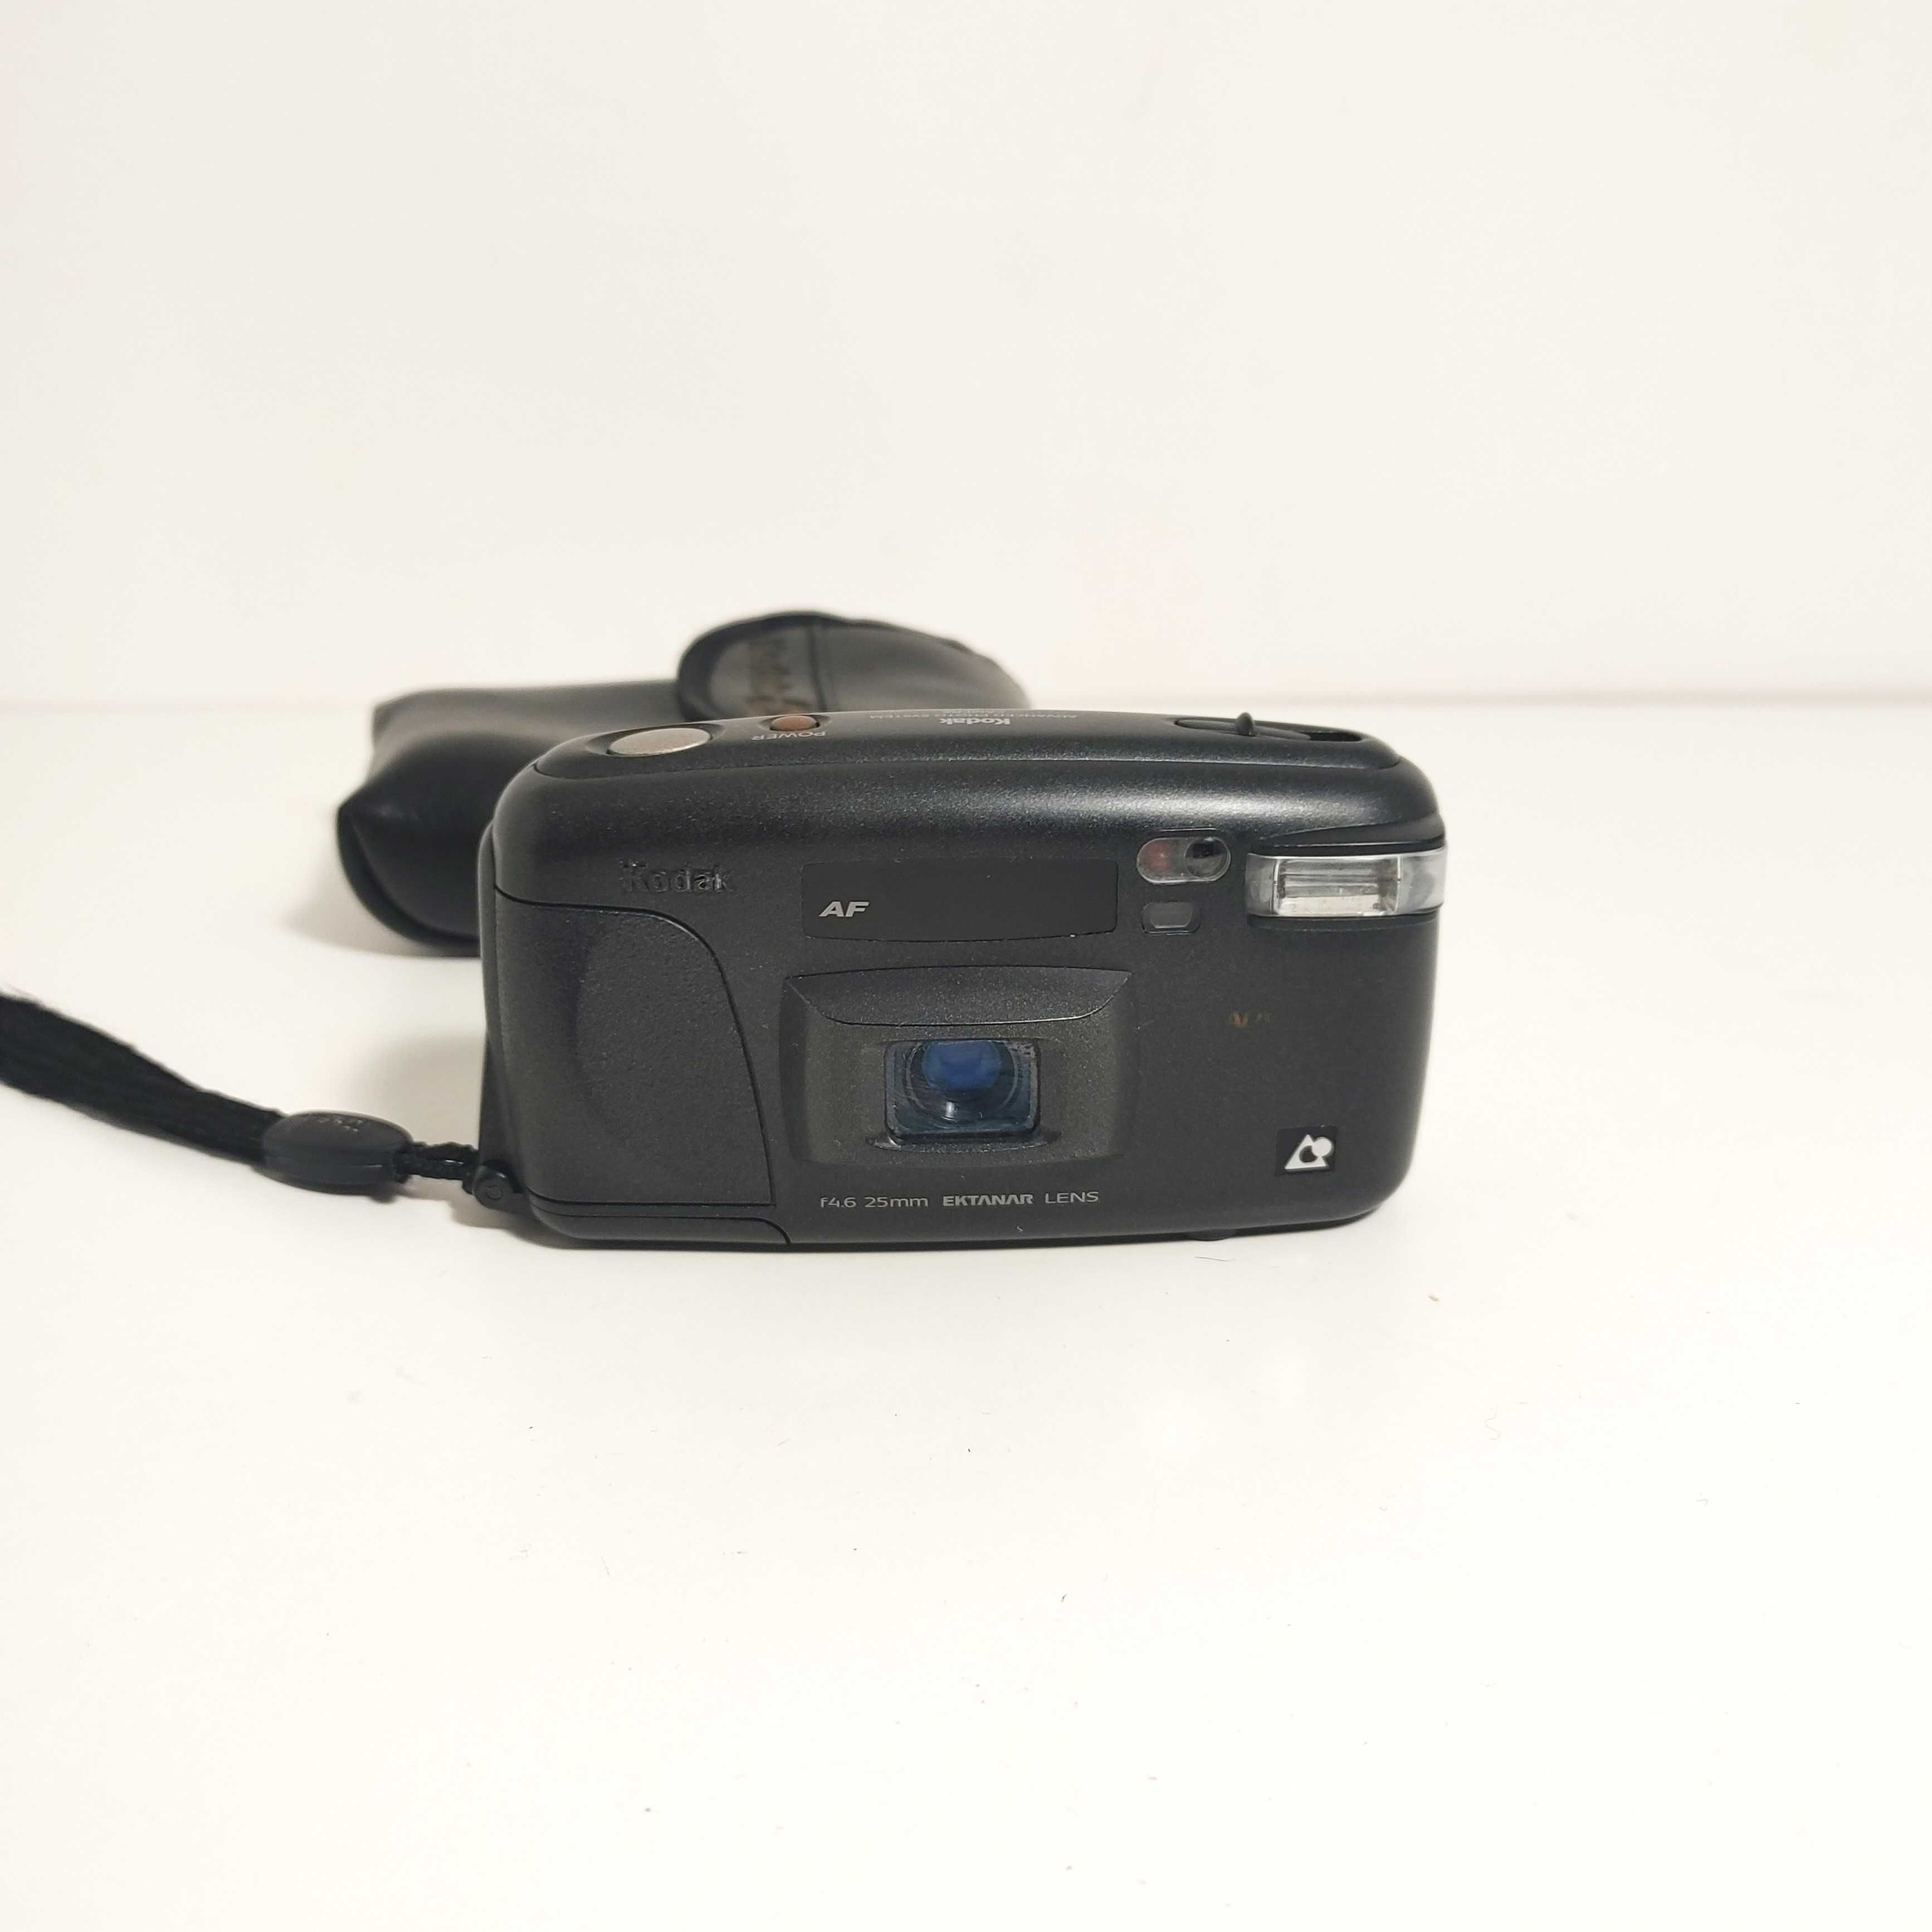 Analogowy aparat Fotograficzny KODAK AdvantiX 3100 AF - APS.